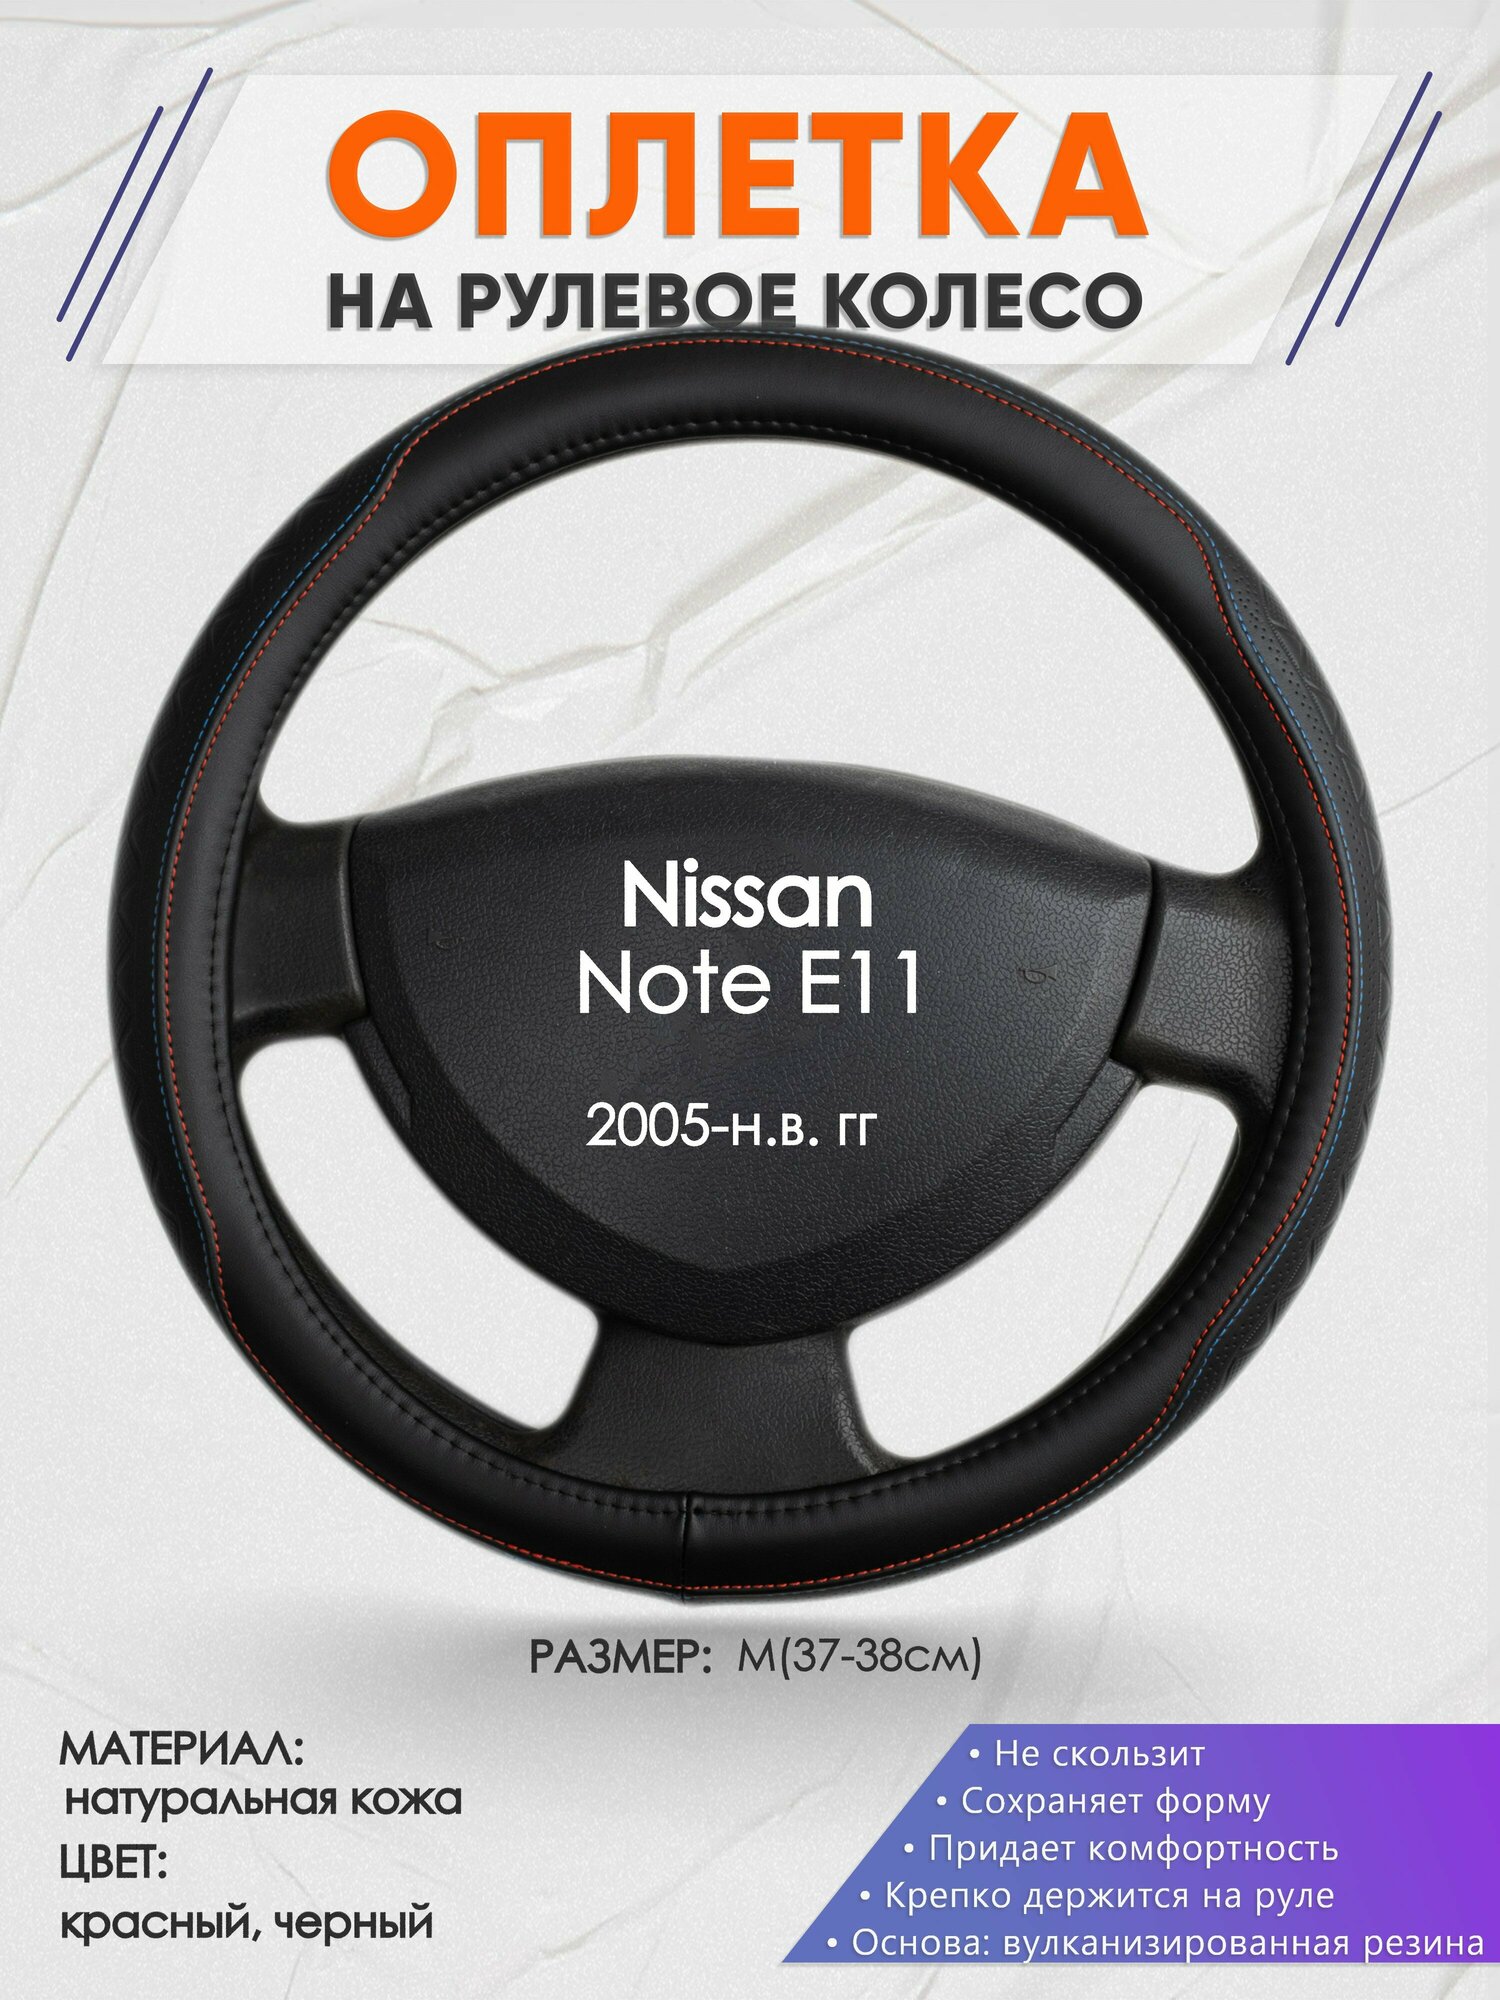 Оплетка на руль для Nissan Note E11(Ниссан Ноут) 2005-н. в, M(37-38см), Натуральная кожа 89